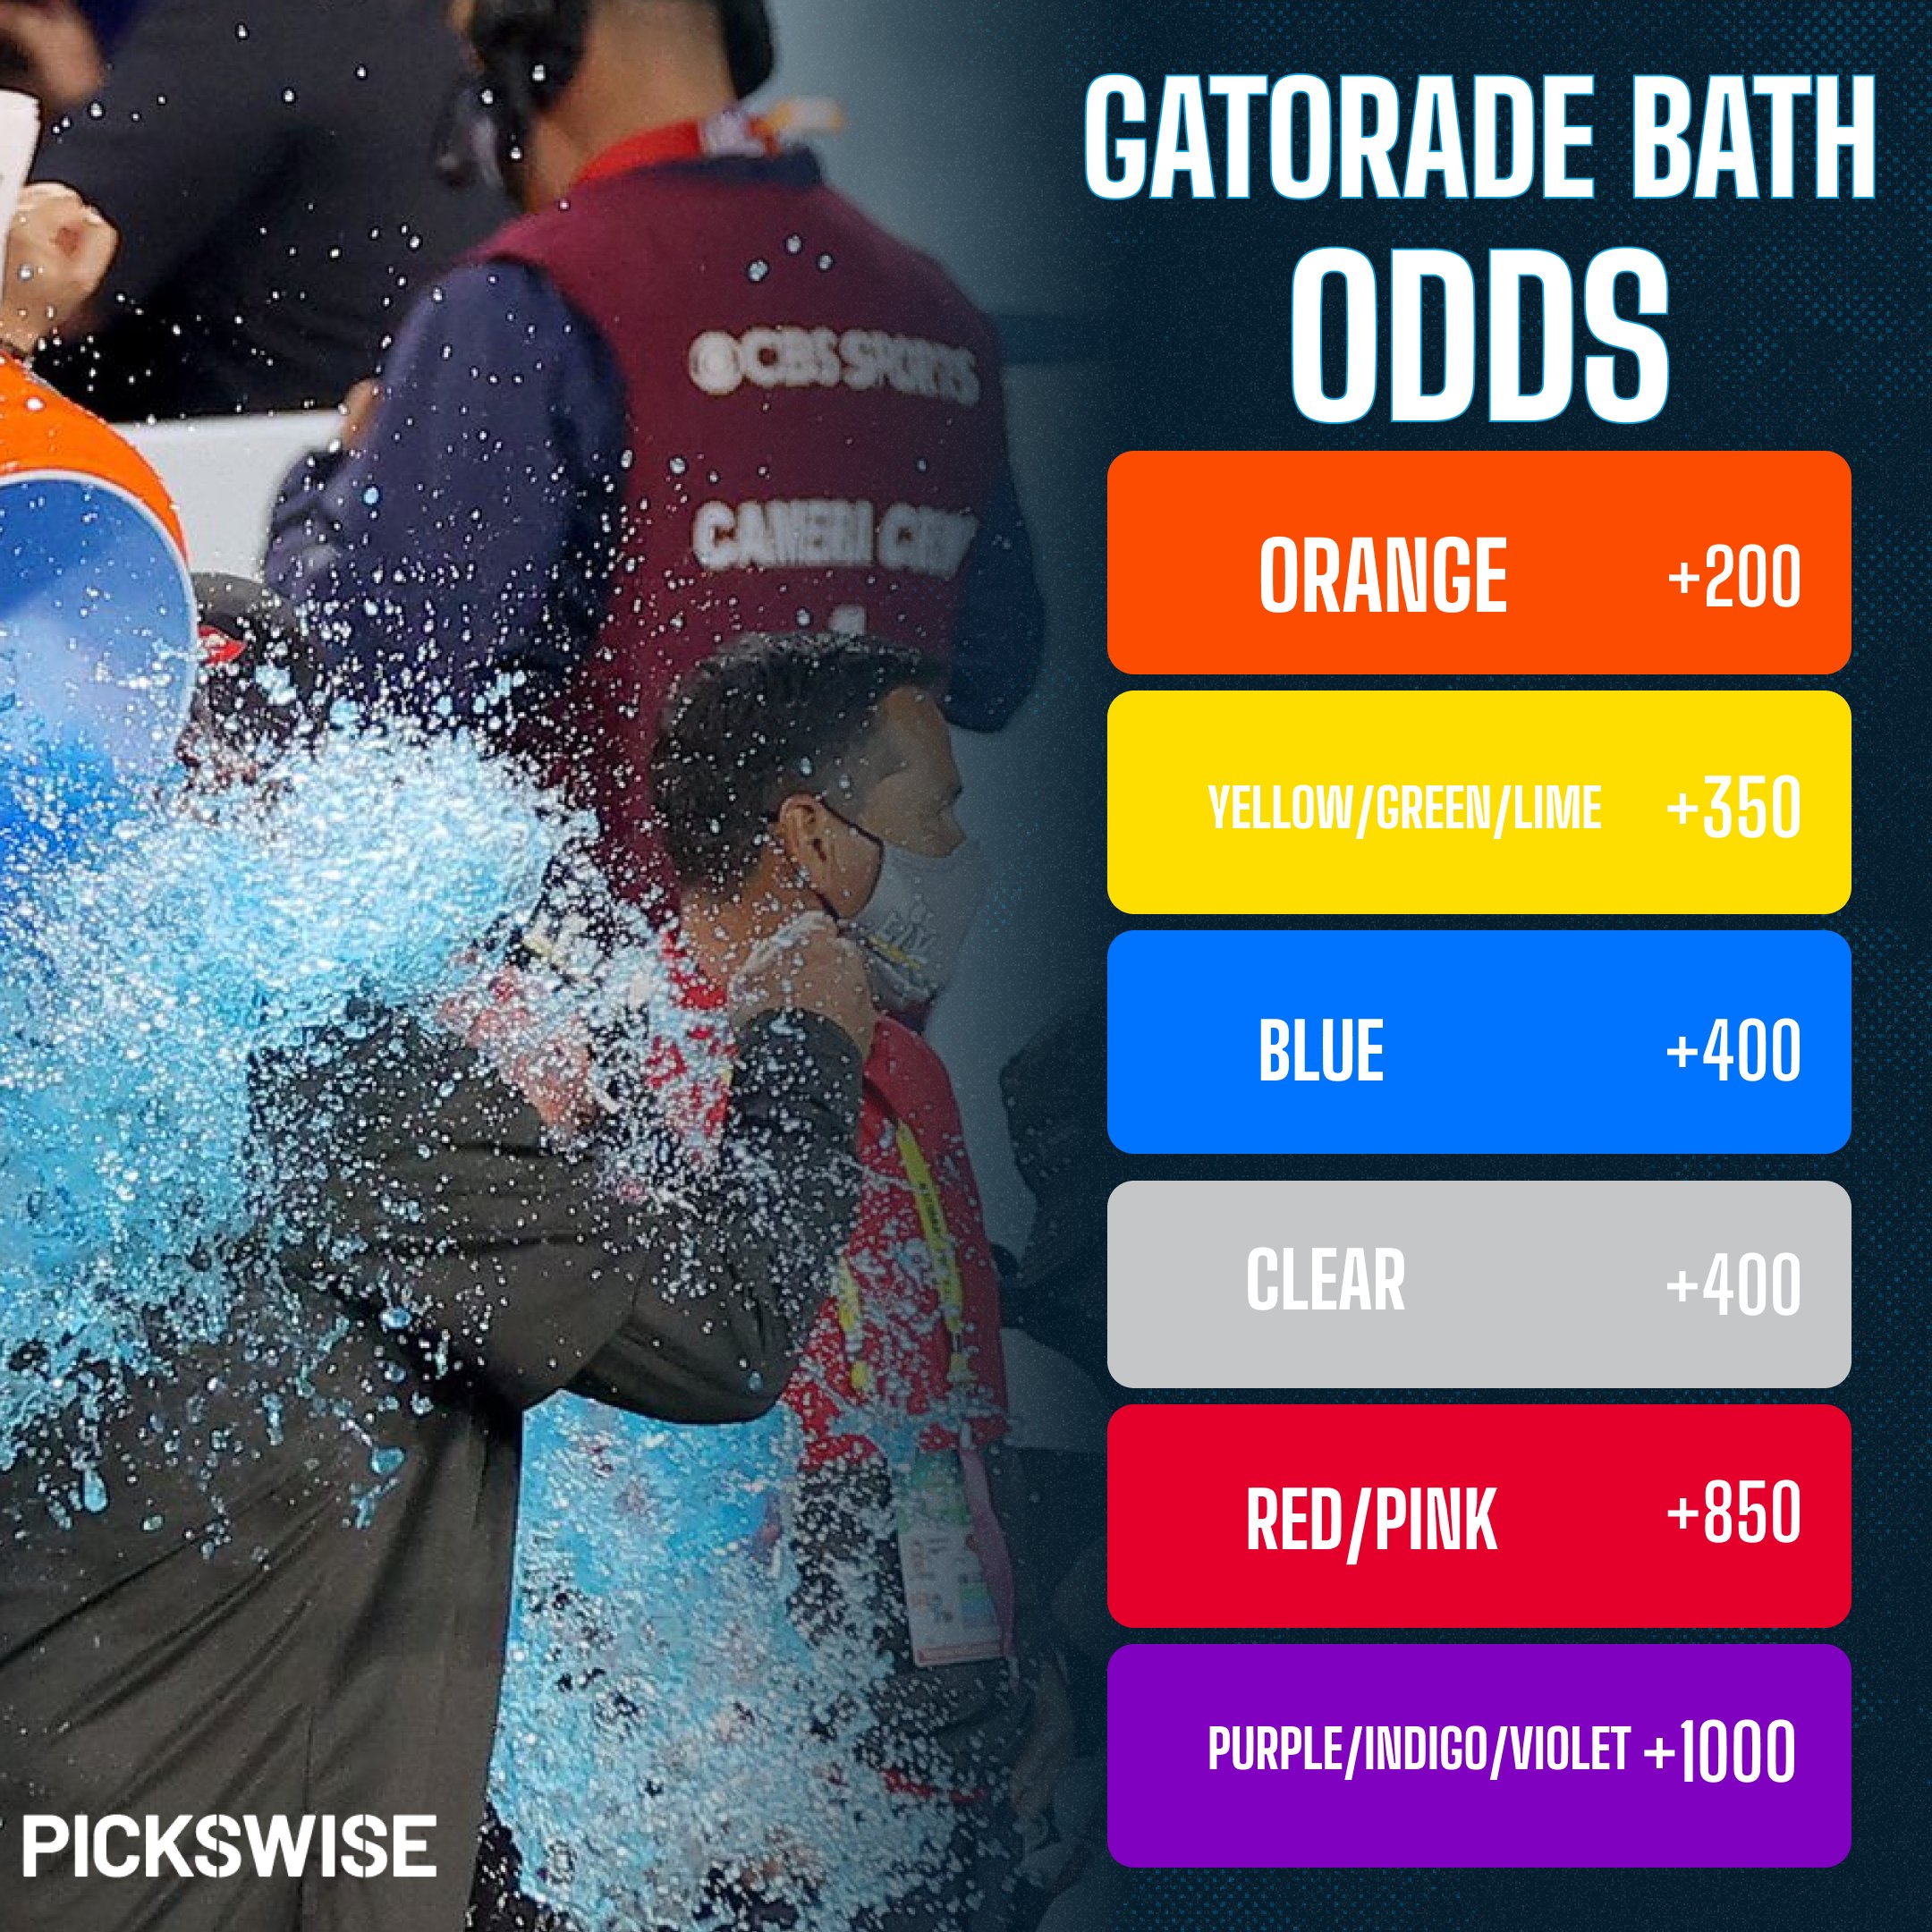 gatorade bath odds